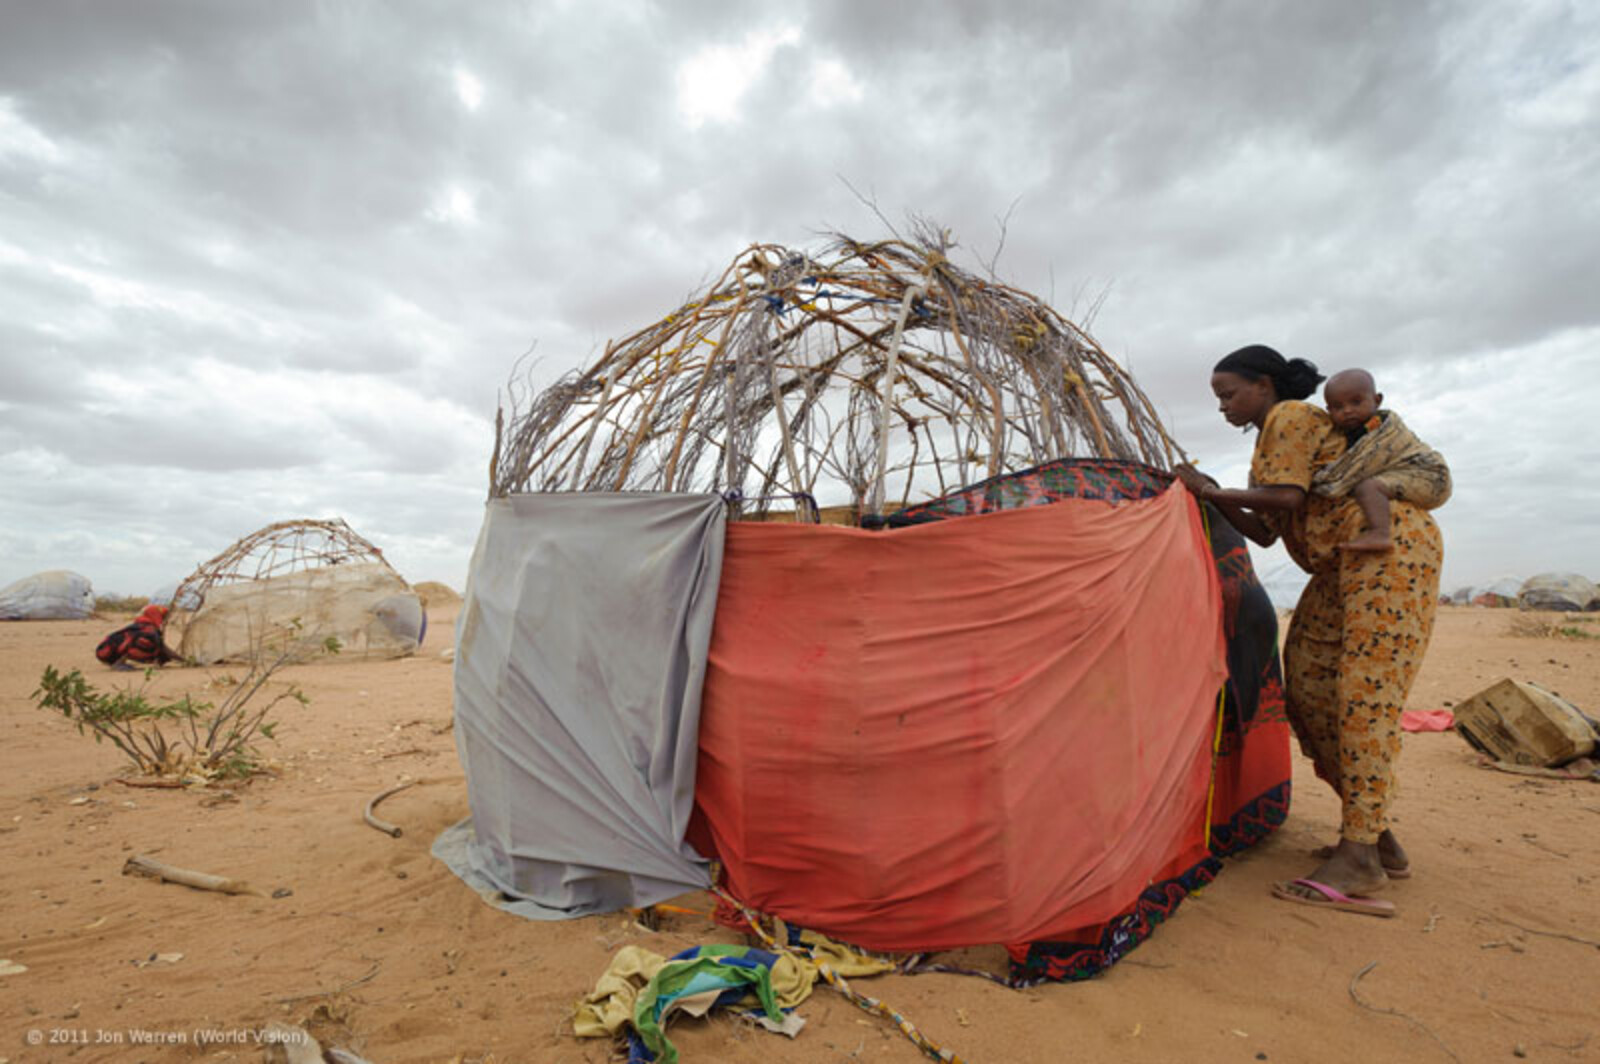 Das Flüchtlingslager Dadaab in Kenia, nahe der Grenze zu Somalia, ist das größte Flüchtlingscamp der Welt. In ihm leben mehr als 400.000 Menschen, die vor den Konflikten in Somalia  geflohen sind. Die 22 jährige Isnino Siyat baut für sich und ihre Kinder